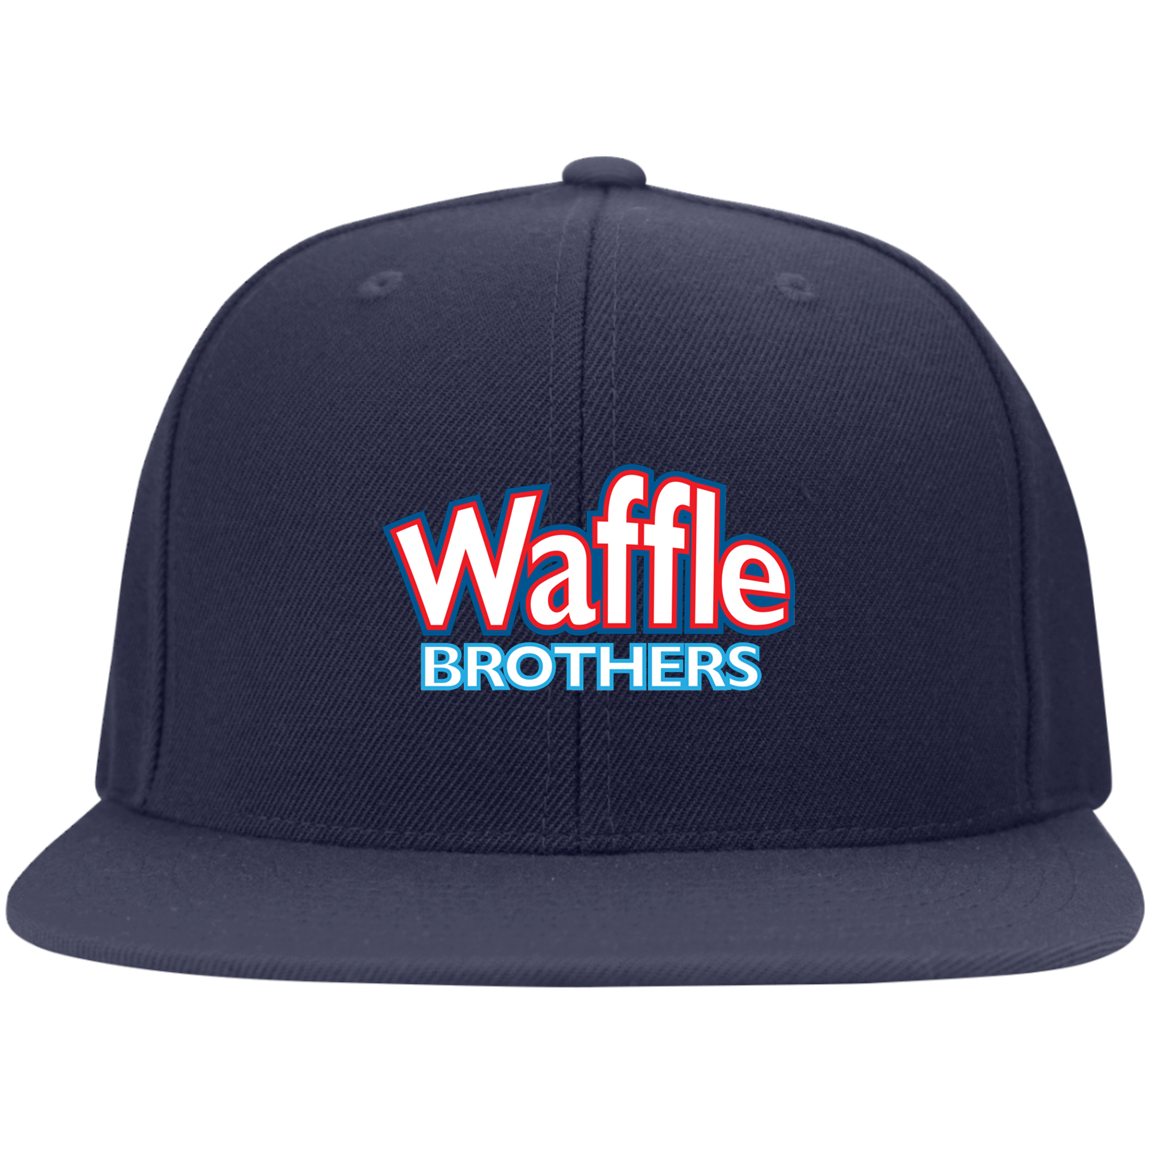 Waffle Brothers Flat Bill Twill Flexfit Cap